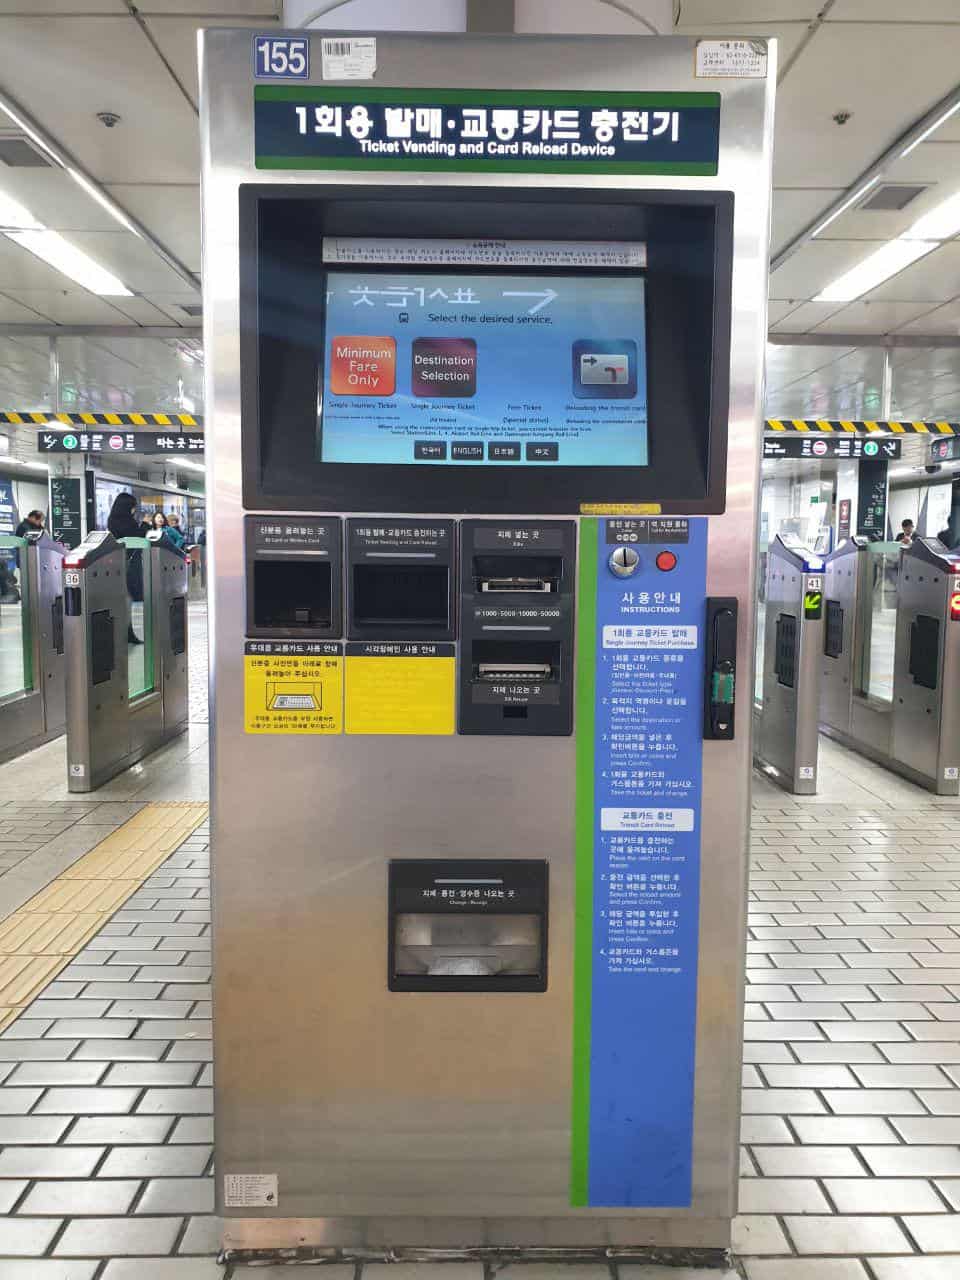 penjual tiket peta seoul metro